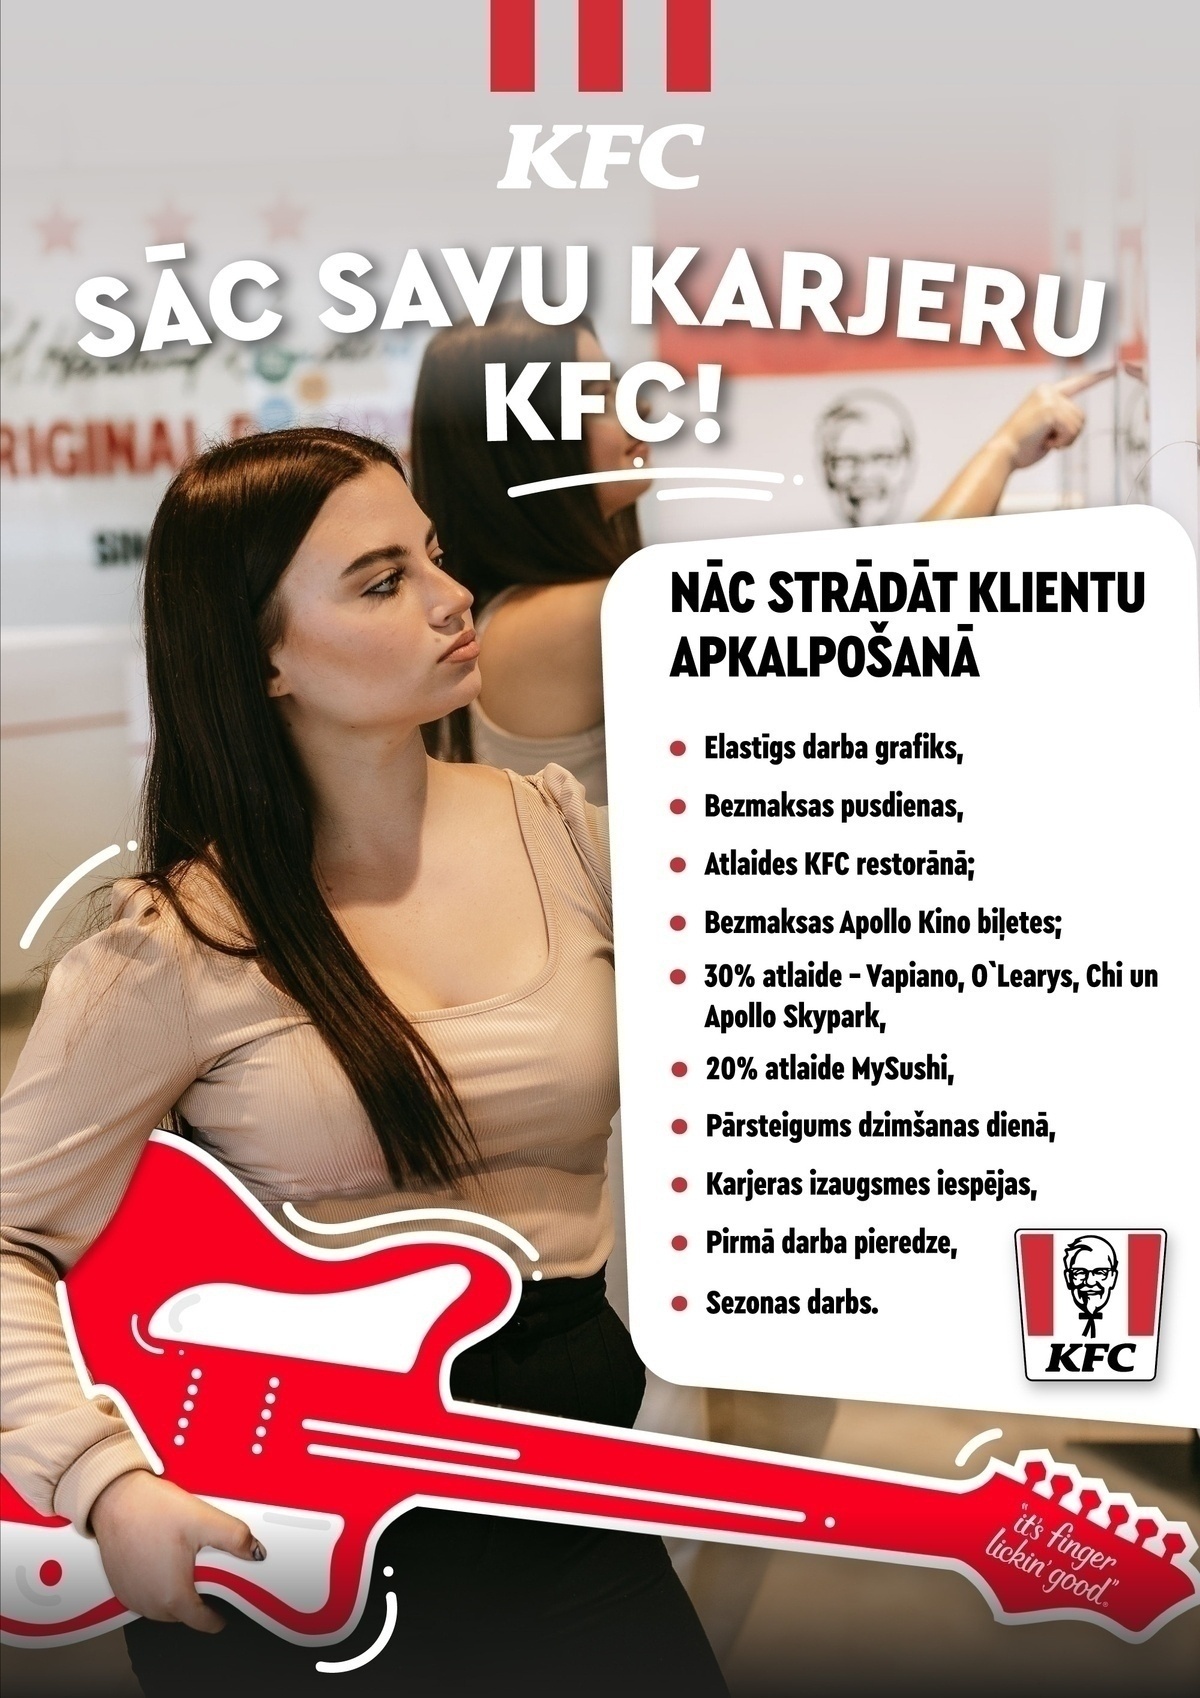 Liāna Haritonova "KFC" Zāles darbinieks(-ce) TC "Akropole Rīga"